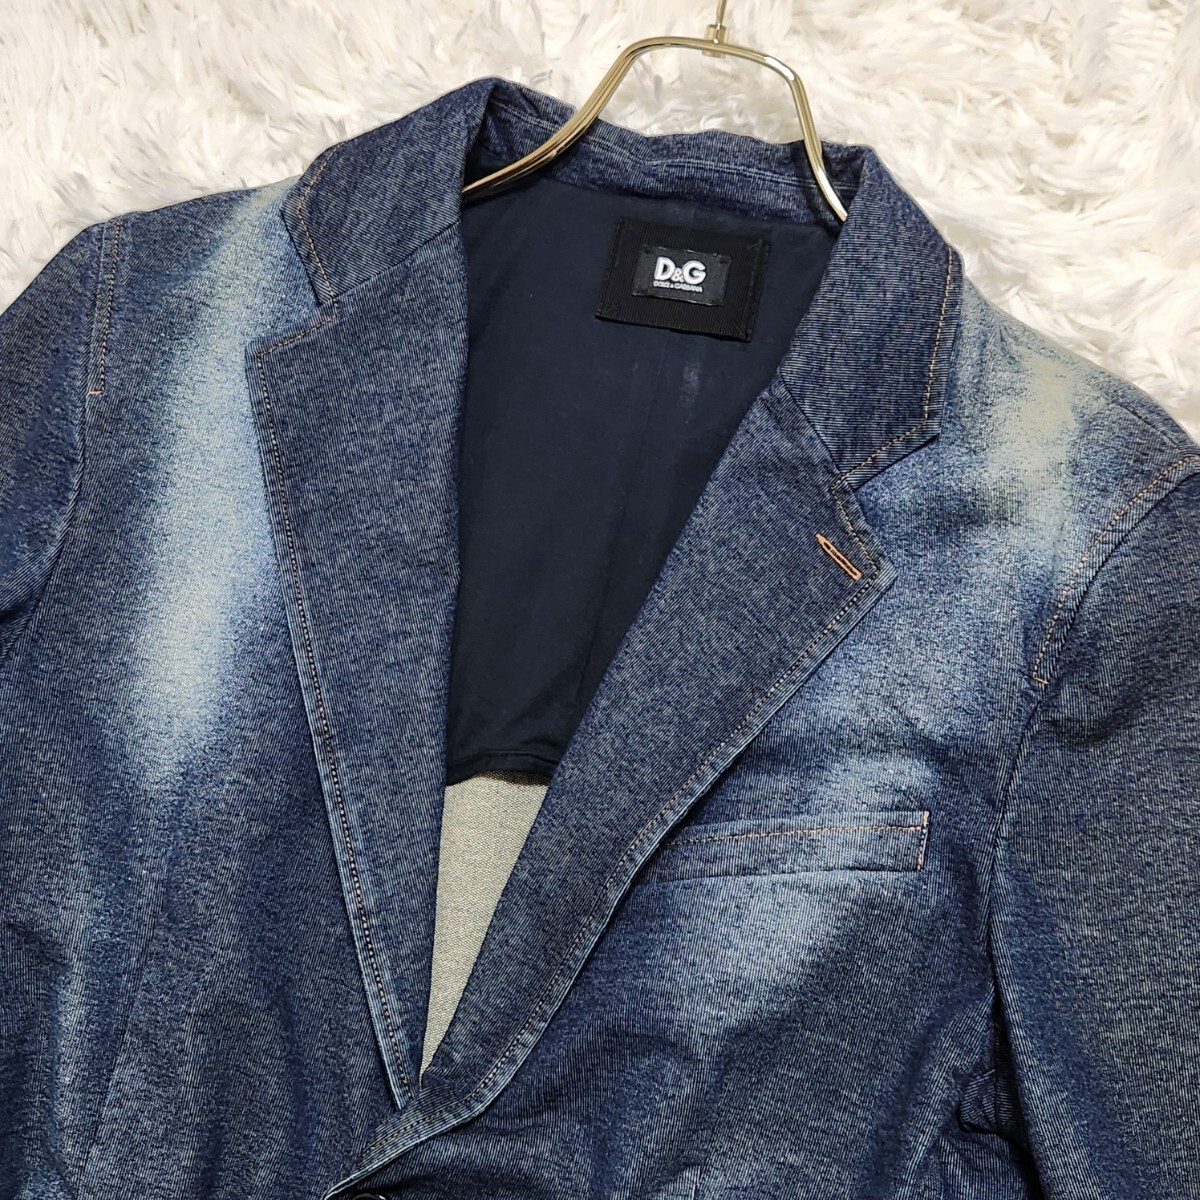  превосходный товар редкий L соответствует DOLCE&GABBANA Dolce & Gabbana tailored jacket Anne темно синий Denim стрейч индиго голубой осветлитель обработка 